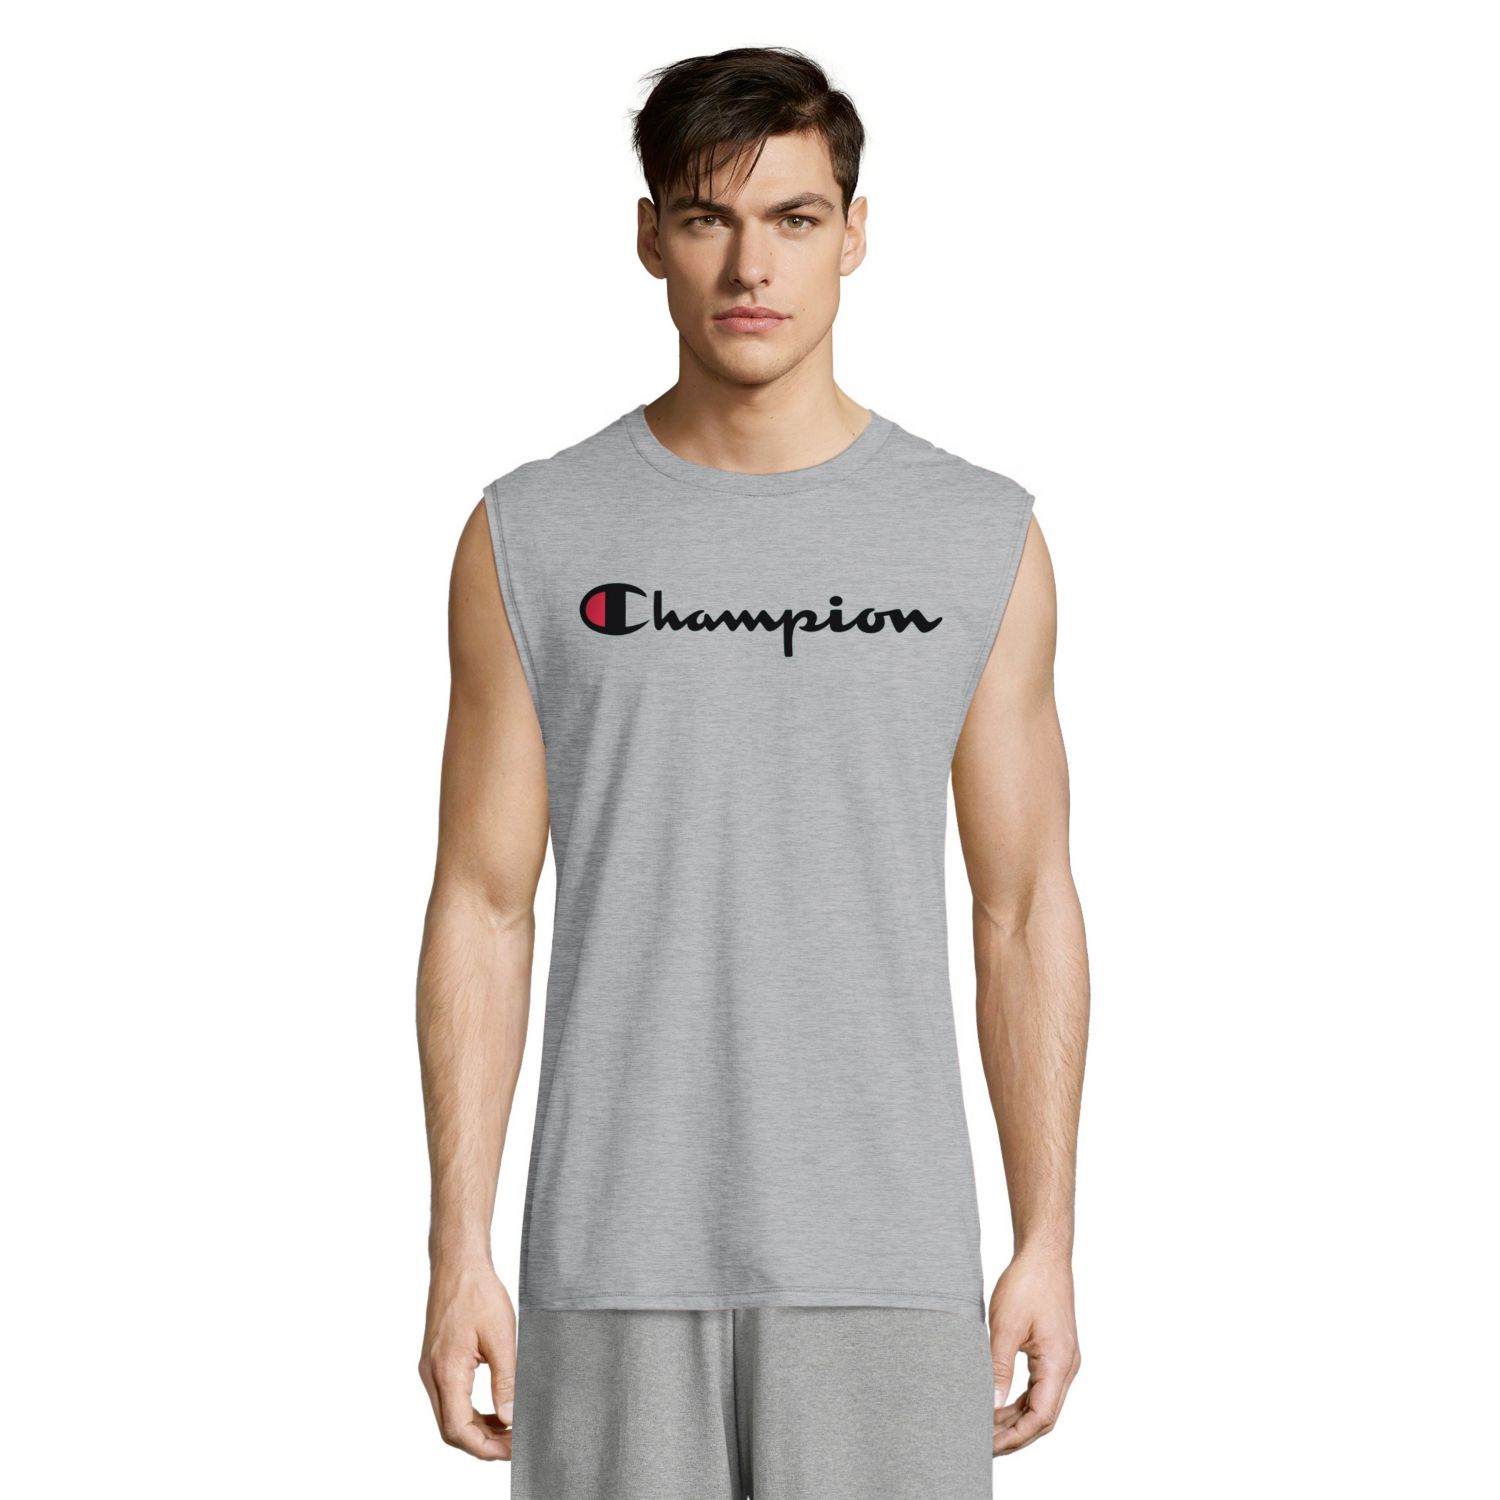 champion sleeveless shirts